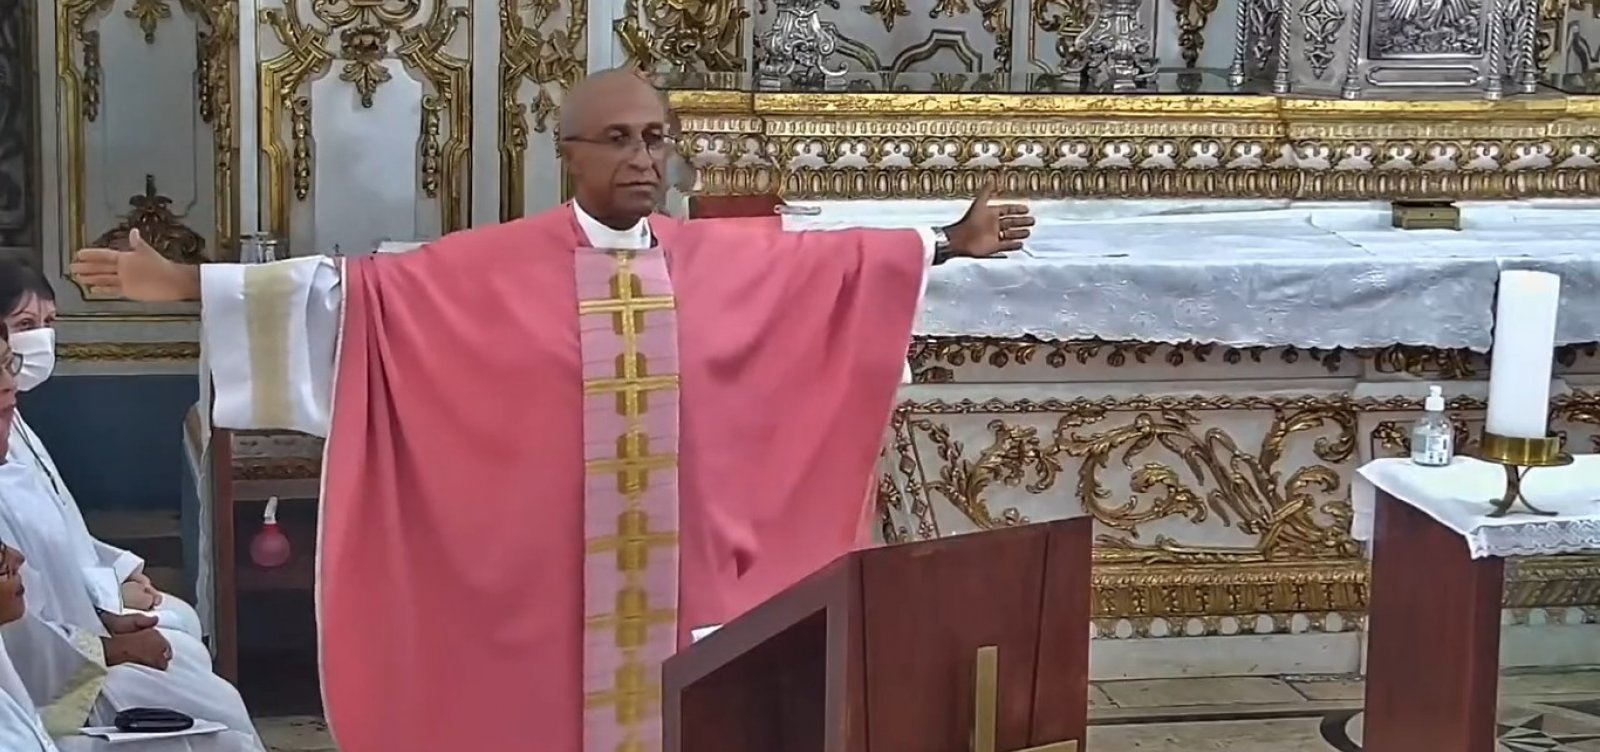 Reitor da Basílica do Bonfim viraliza com mensagem sobre tolerância a todas as religiões: 'não sou melhor do que eles'; veja vídeo 